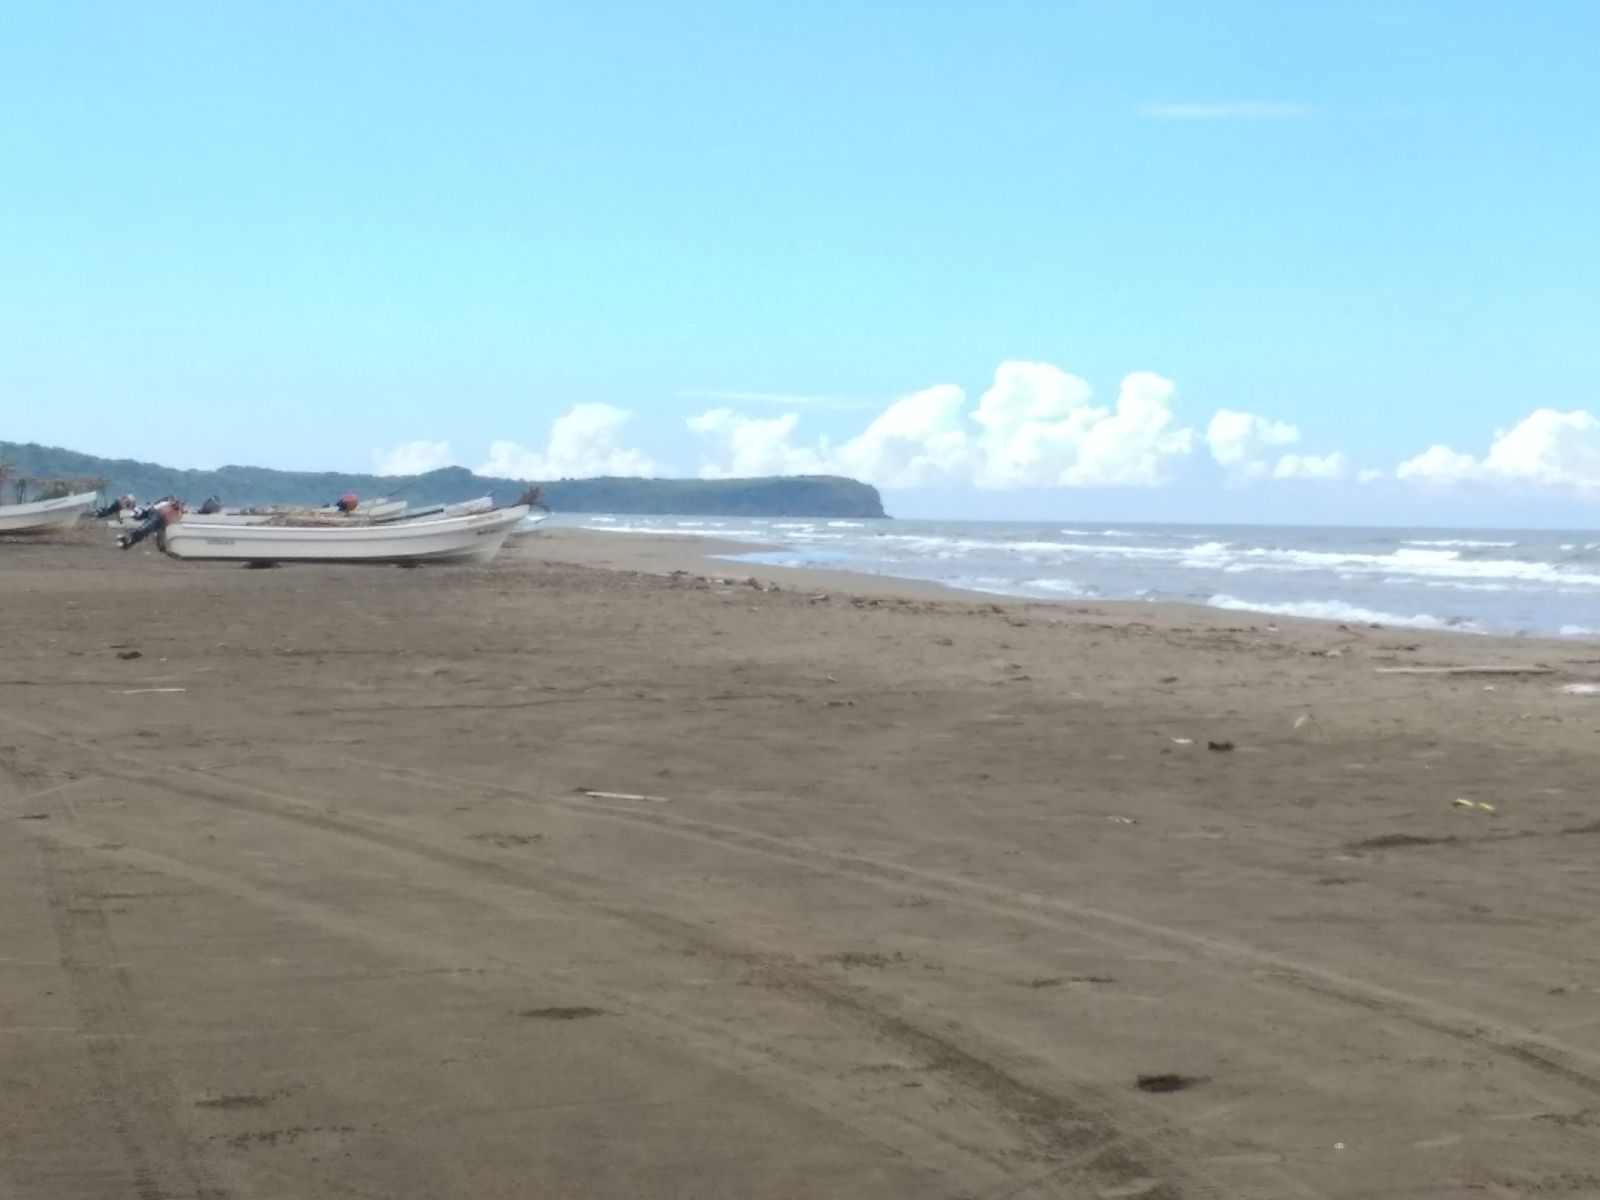 Playa Boca Chamilpa'in fotoğrafı geniş plaj ile birlikte